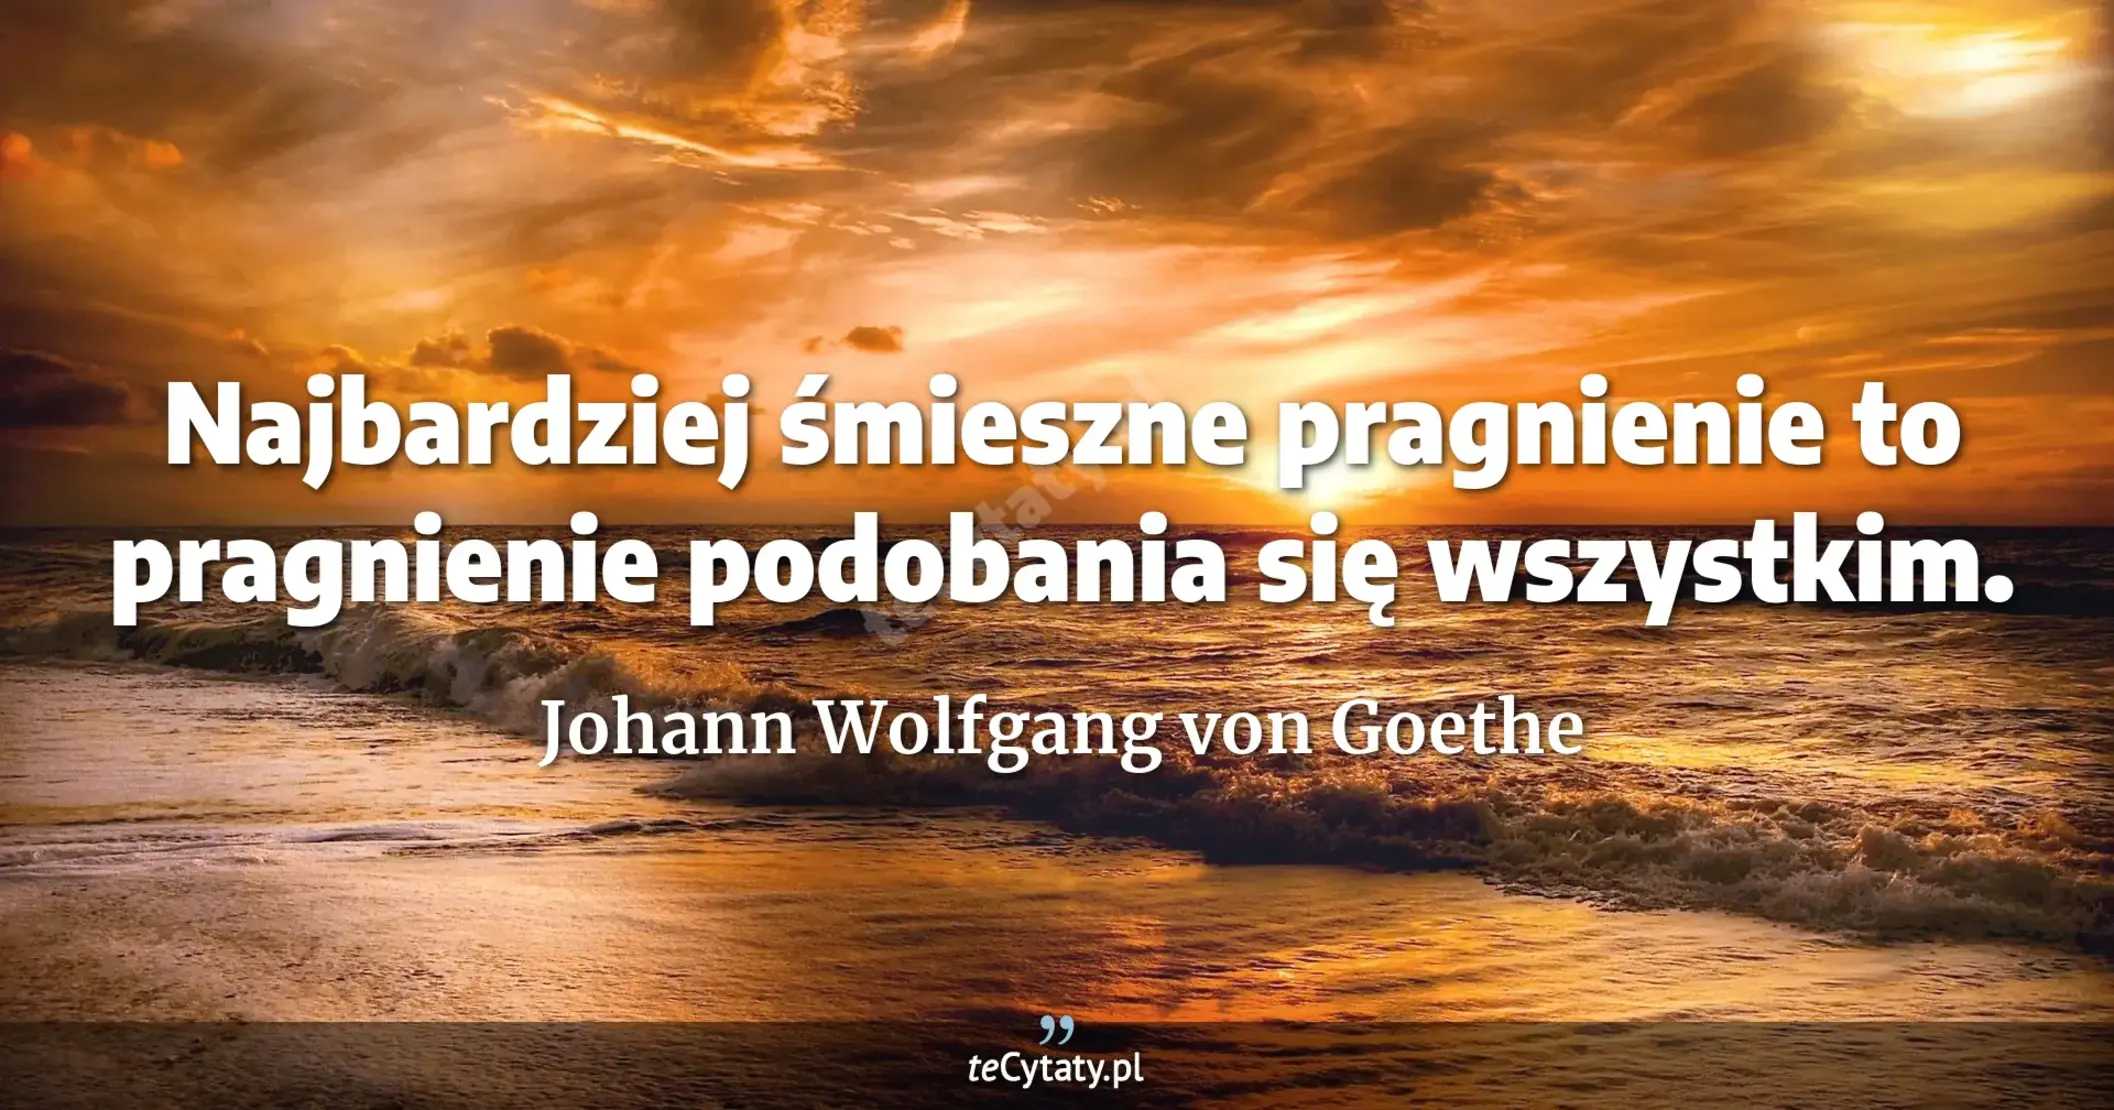 Najbardziej śmieszne pragnienie to pragnienie podobania się wszystkim. - Johann Wolfgang von Goethe